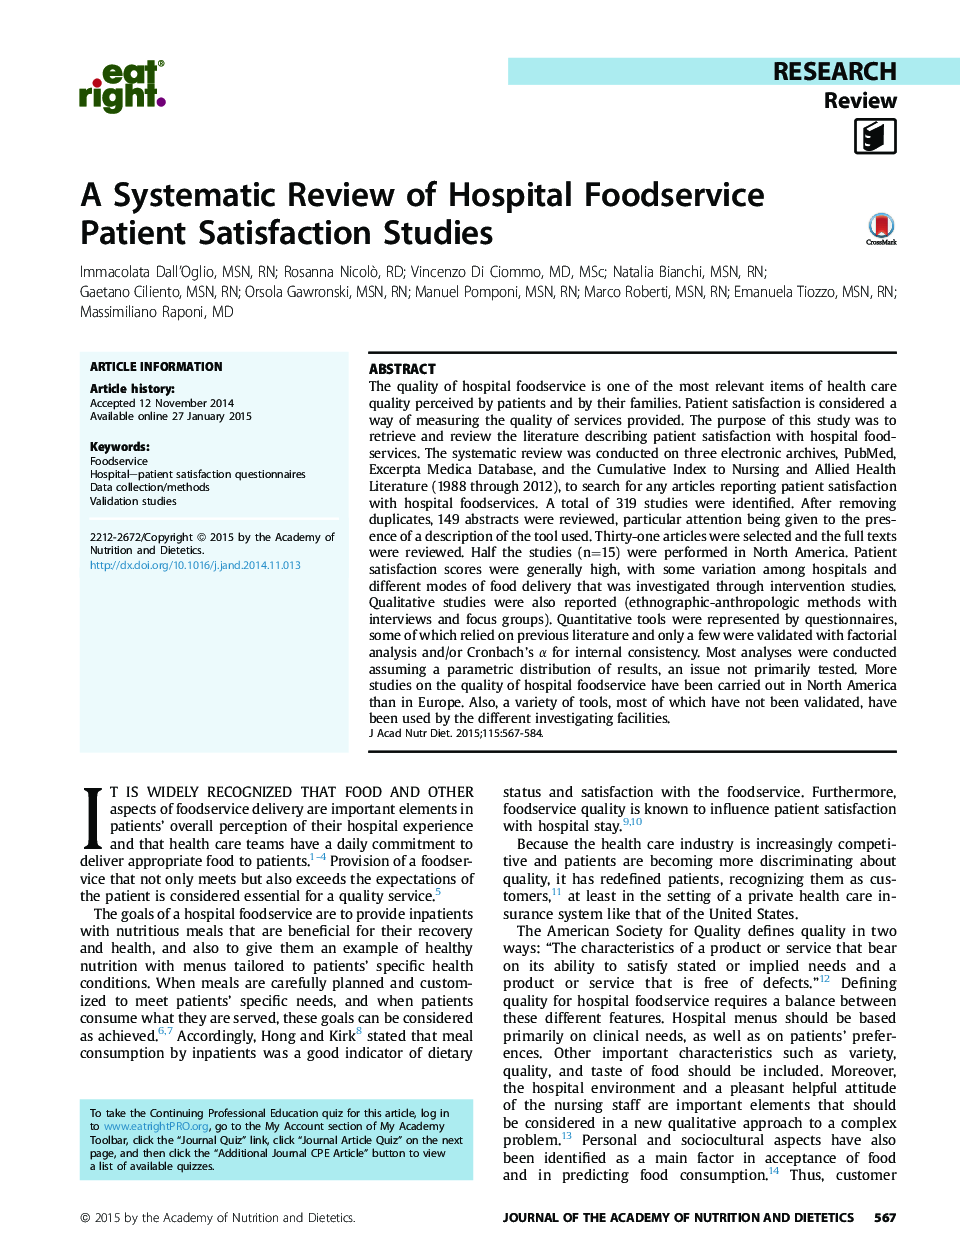 بررسی سیستماتیک از مطالعات رضایتمندی بیمار از سرویس غذای بیمارستانی  